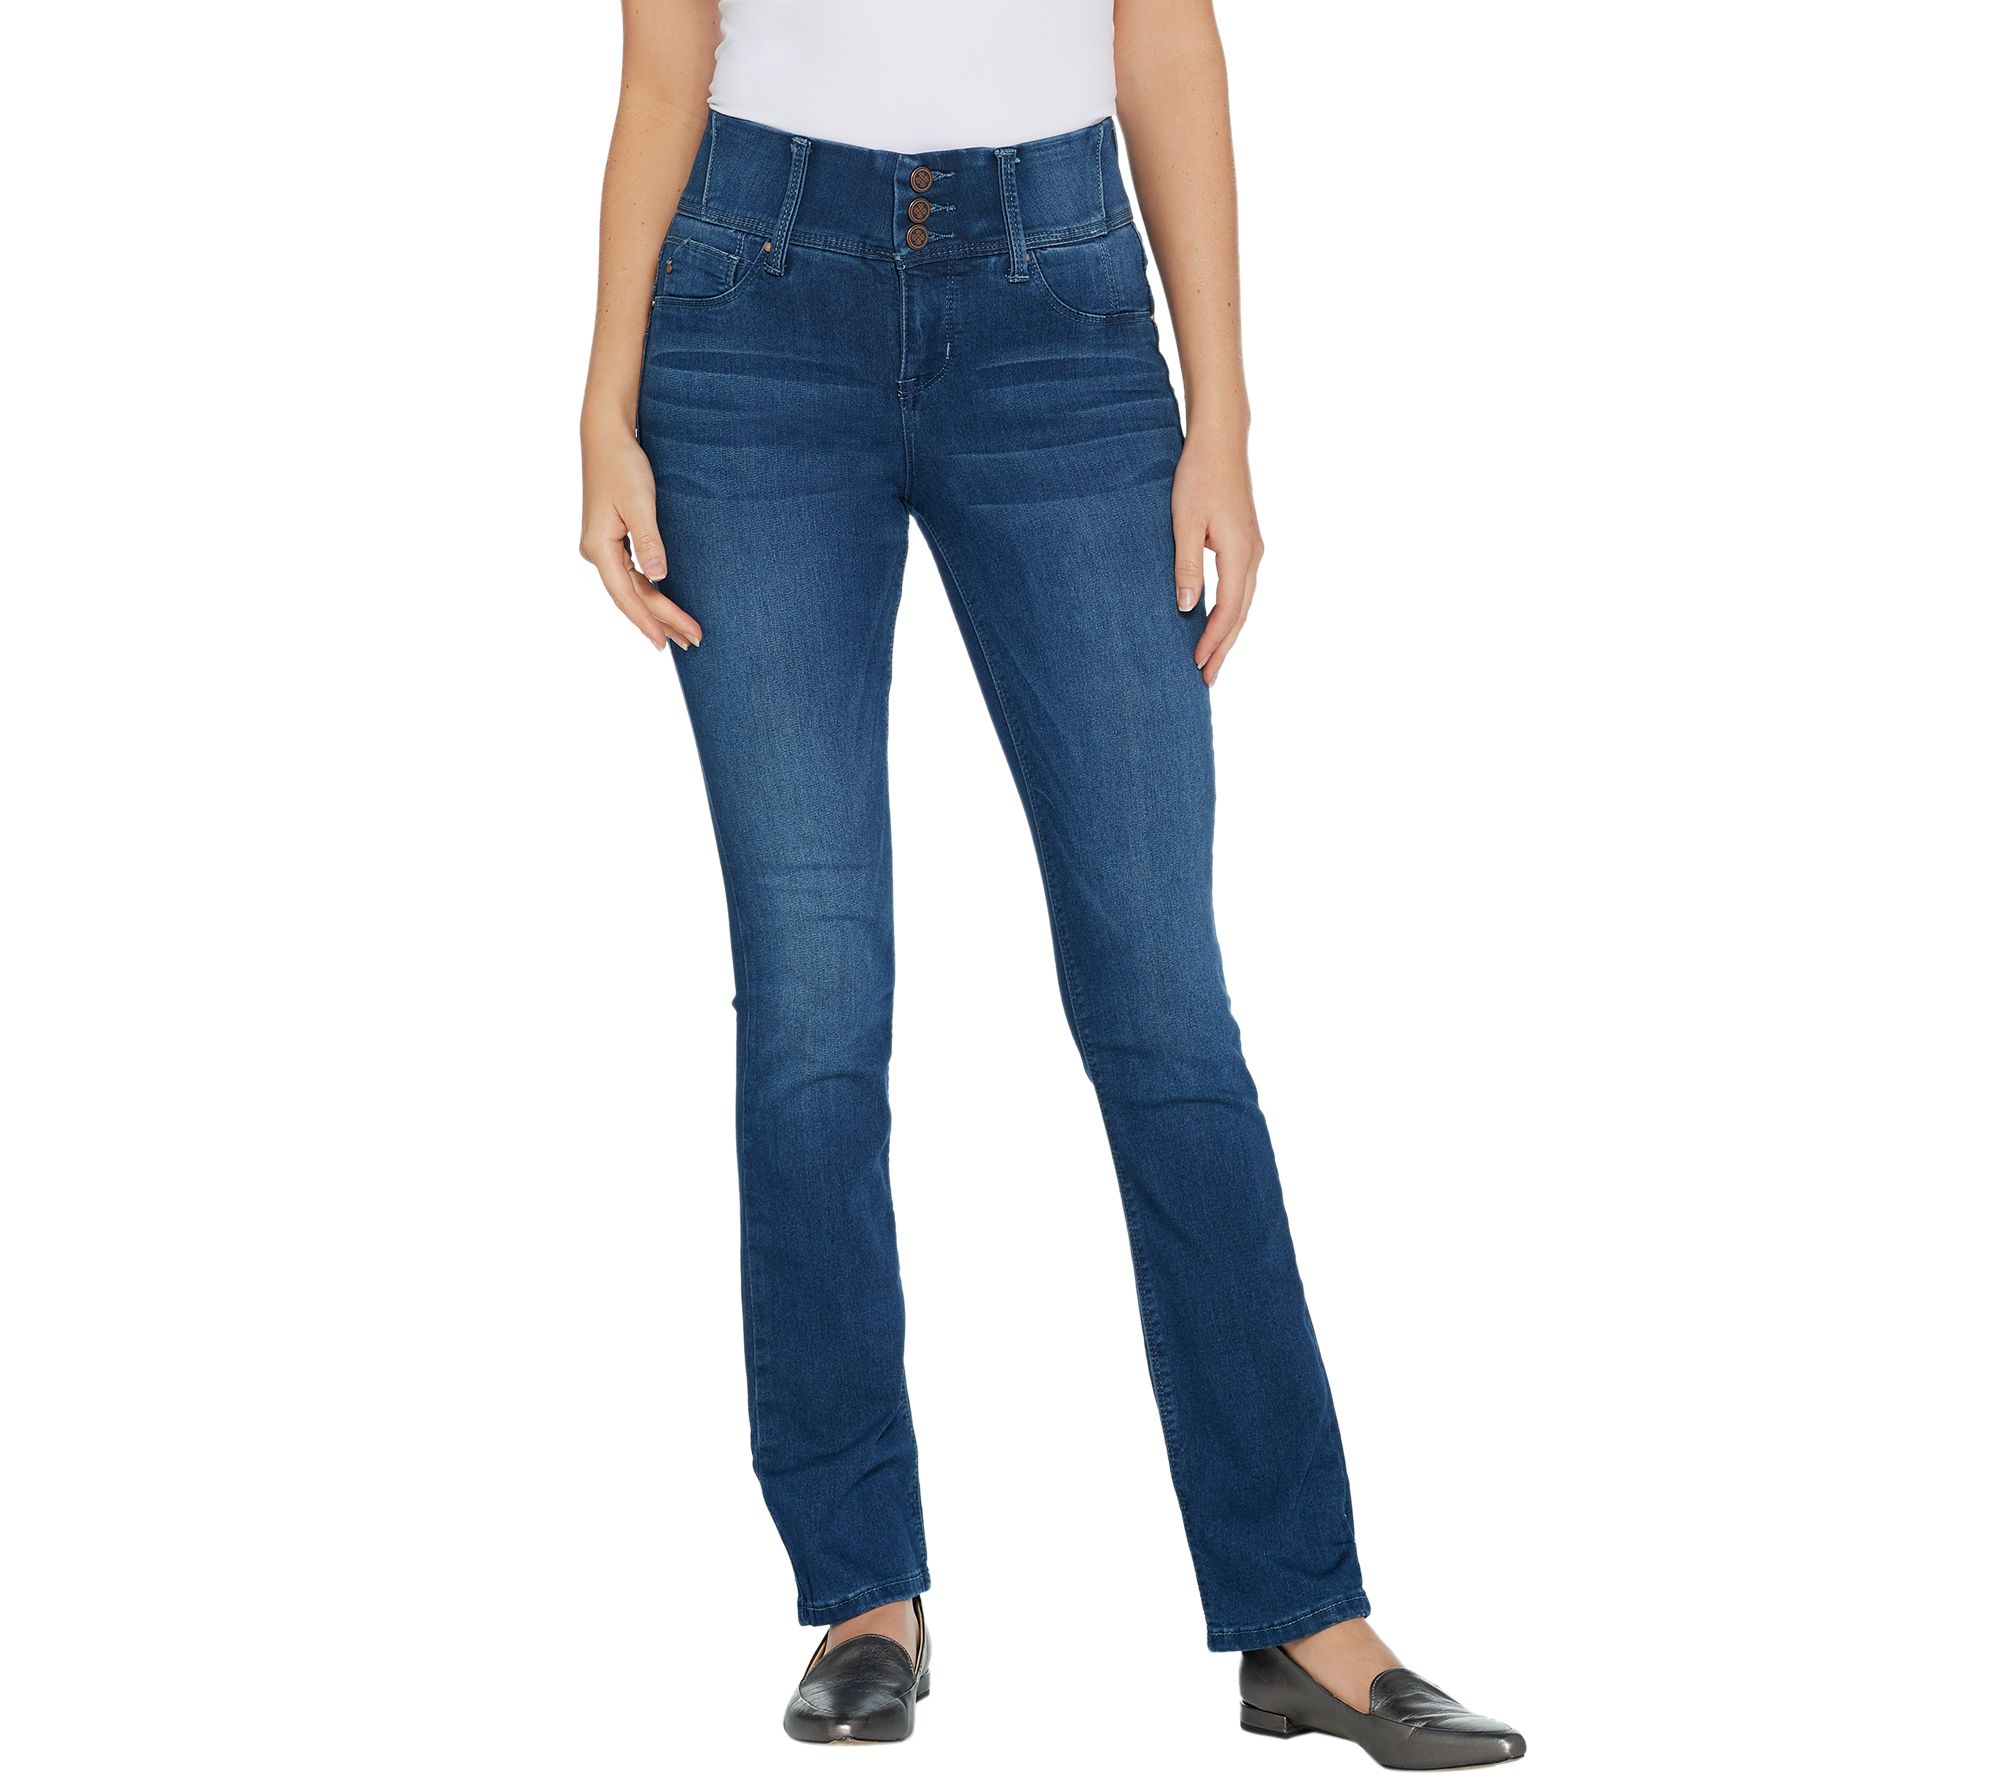 laurie felt jeans